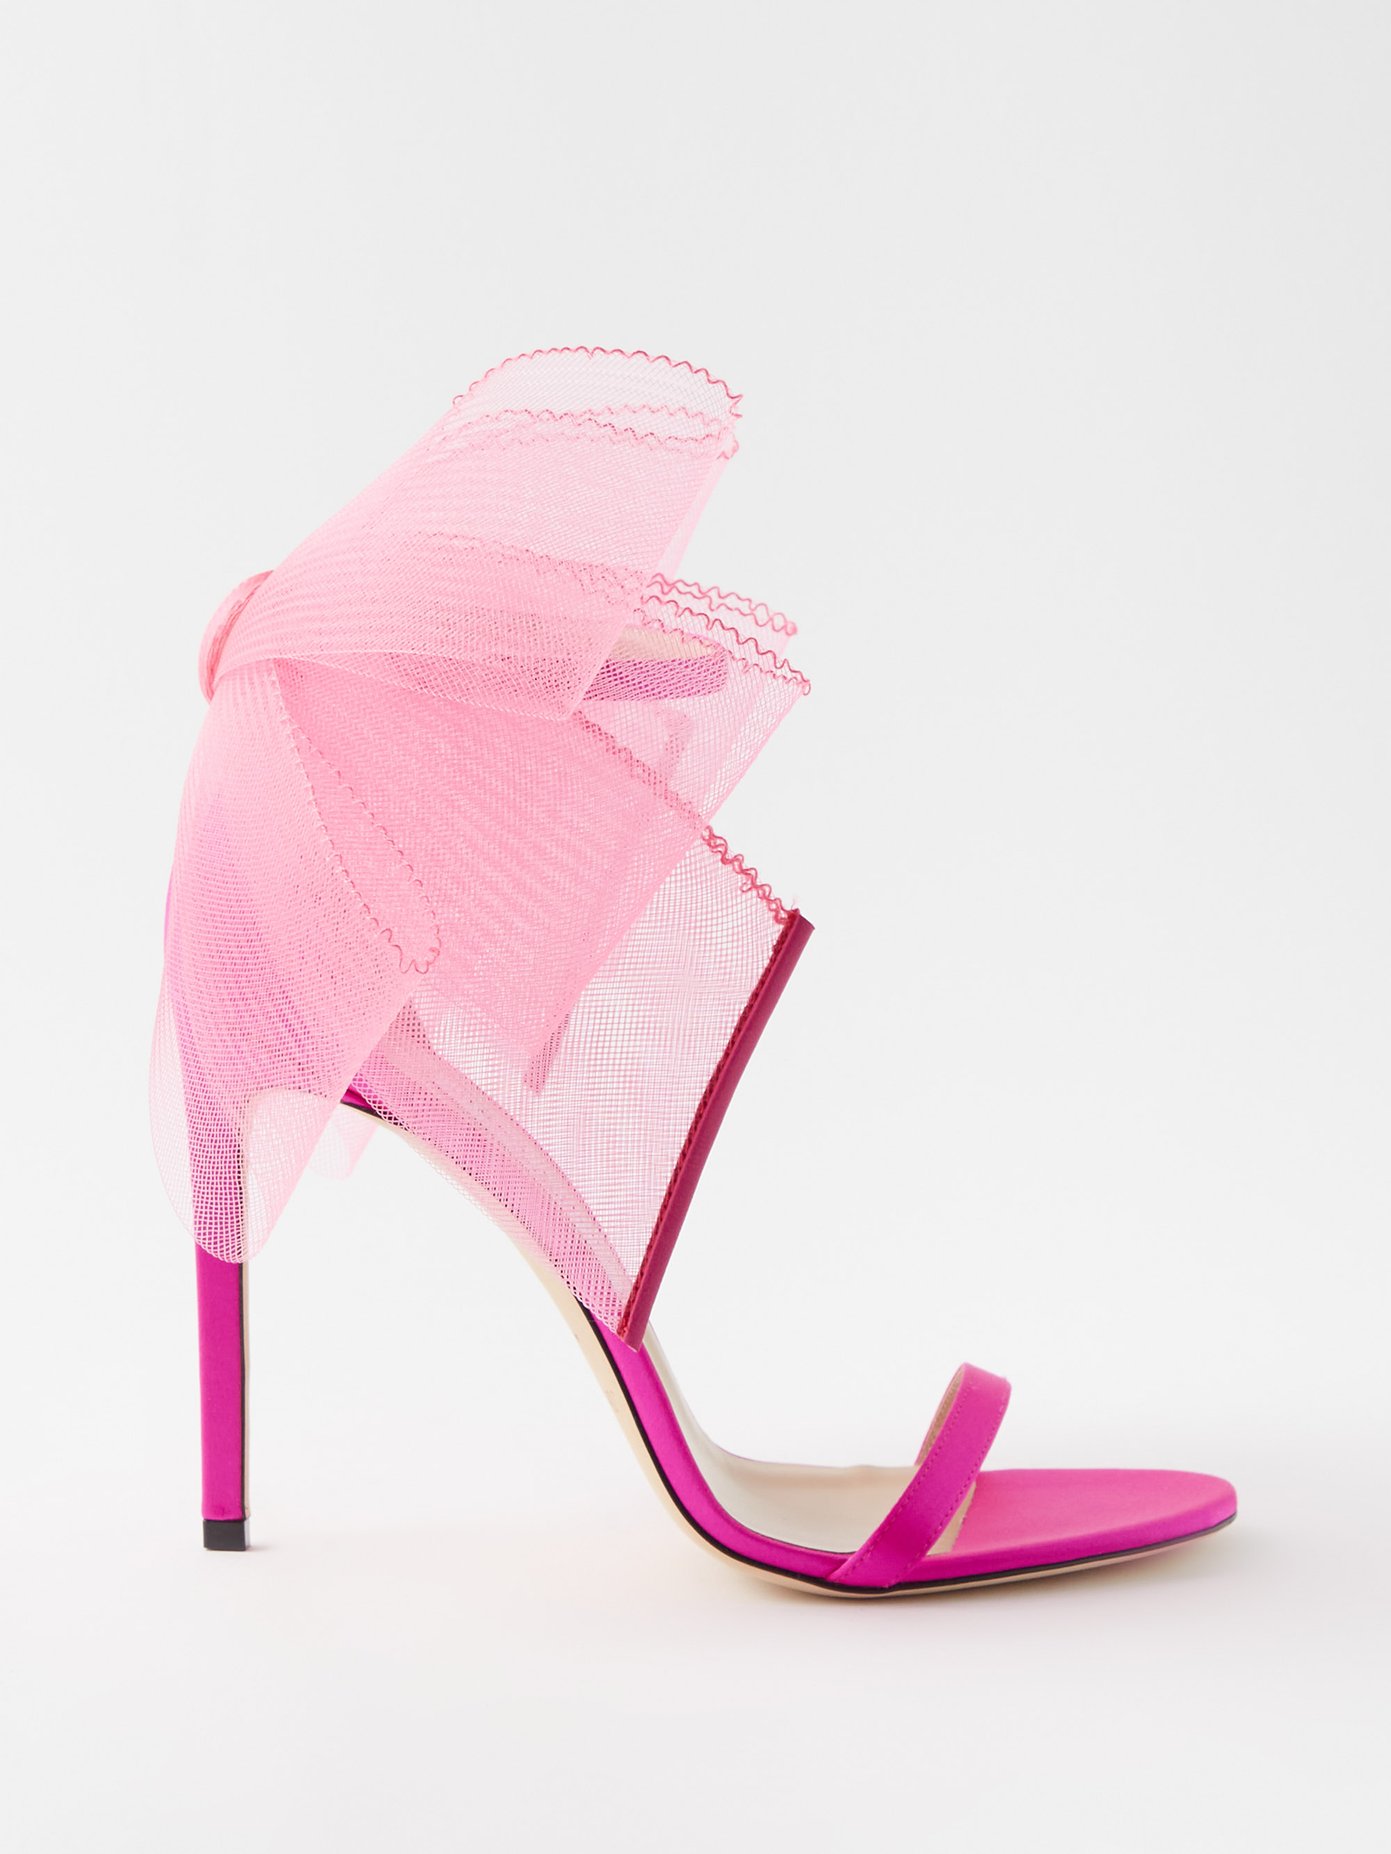 지미 추 아벨린 리본 힐 샌들Jimmy Choo Pink Aveline 100 oversized bow satin sandals